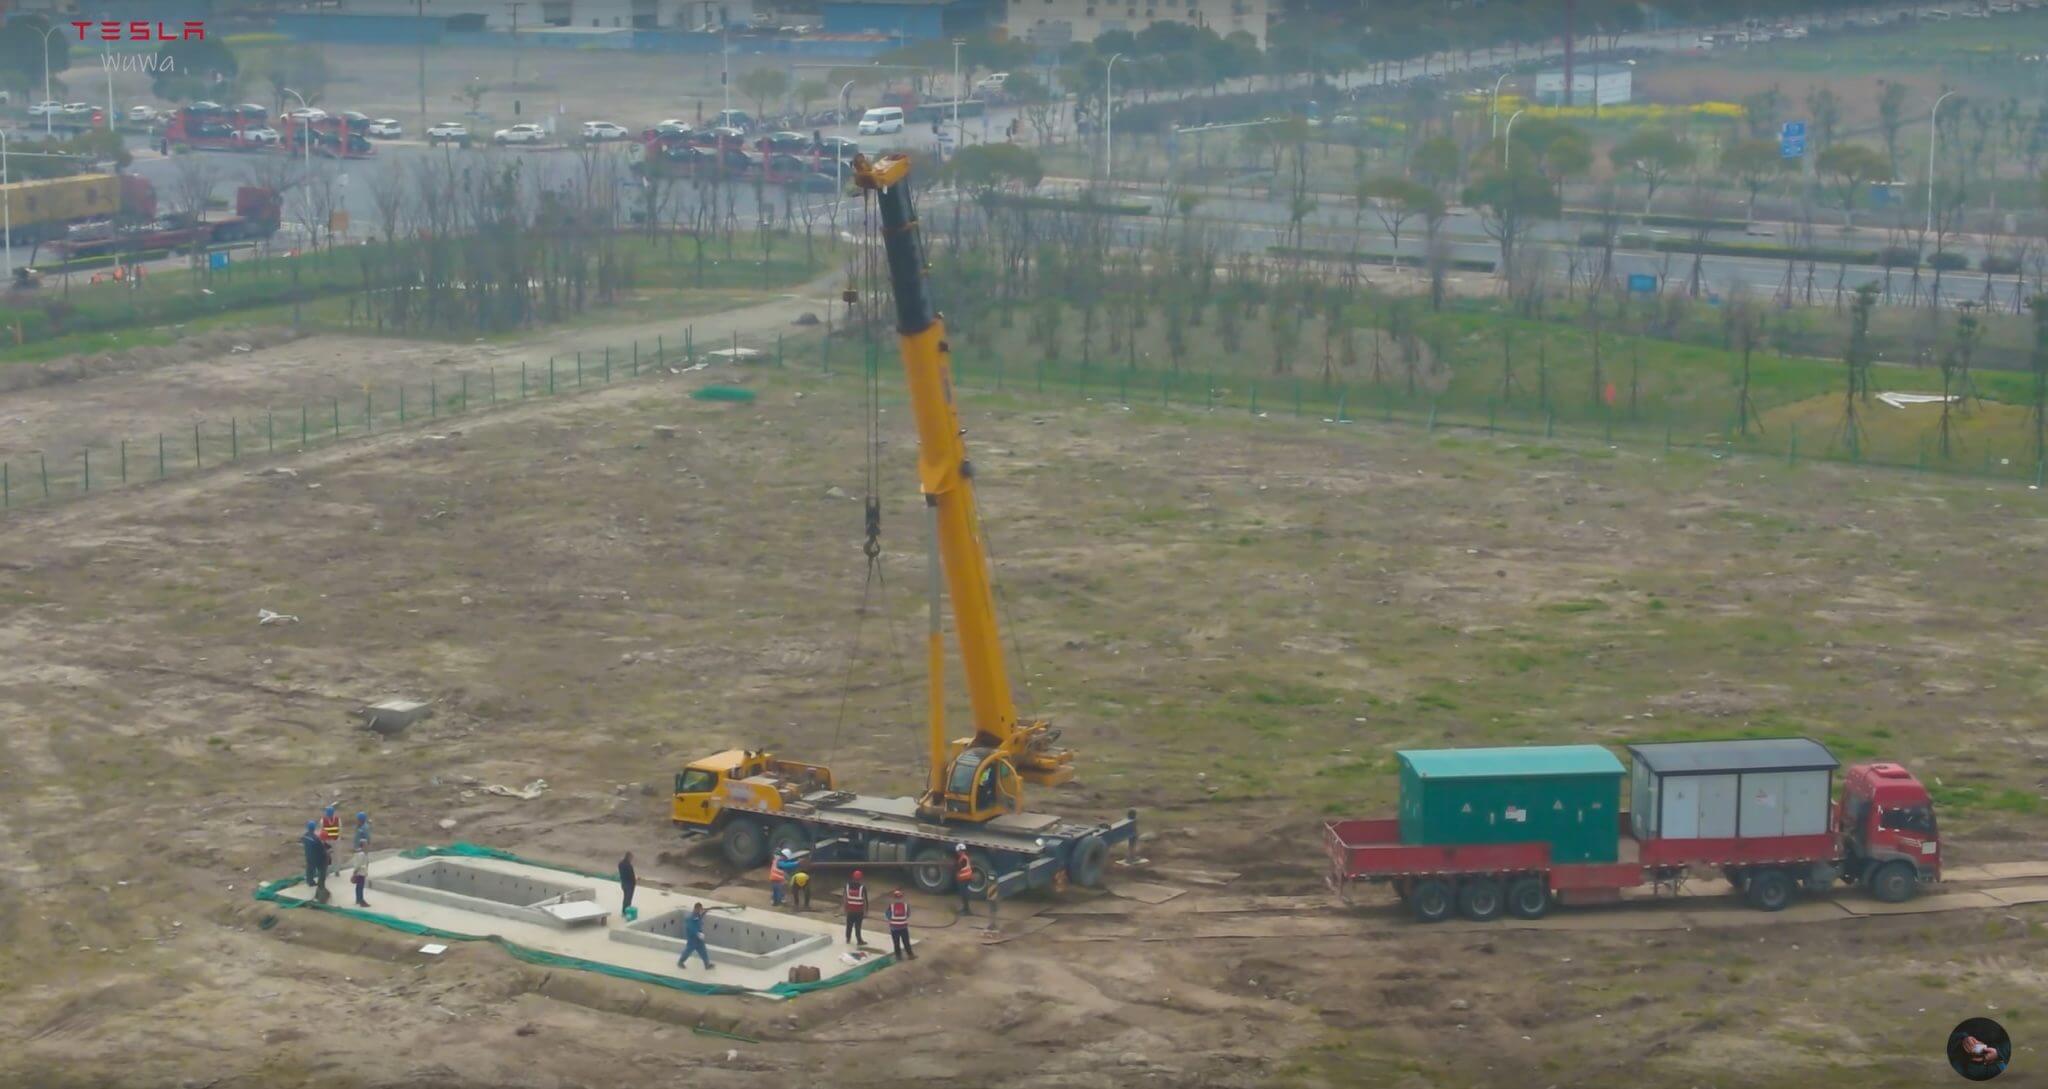 特斯拉似乎已开始上海超级储能工厂的建设